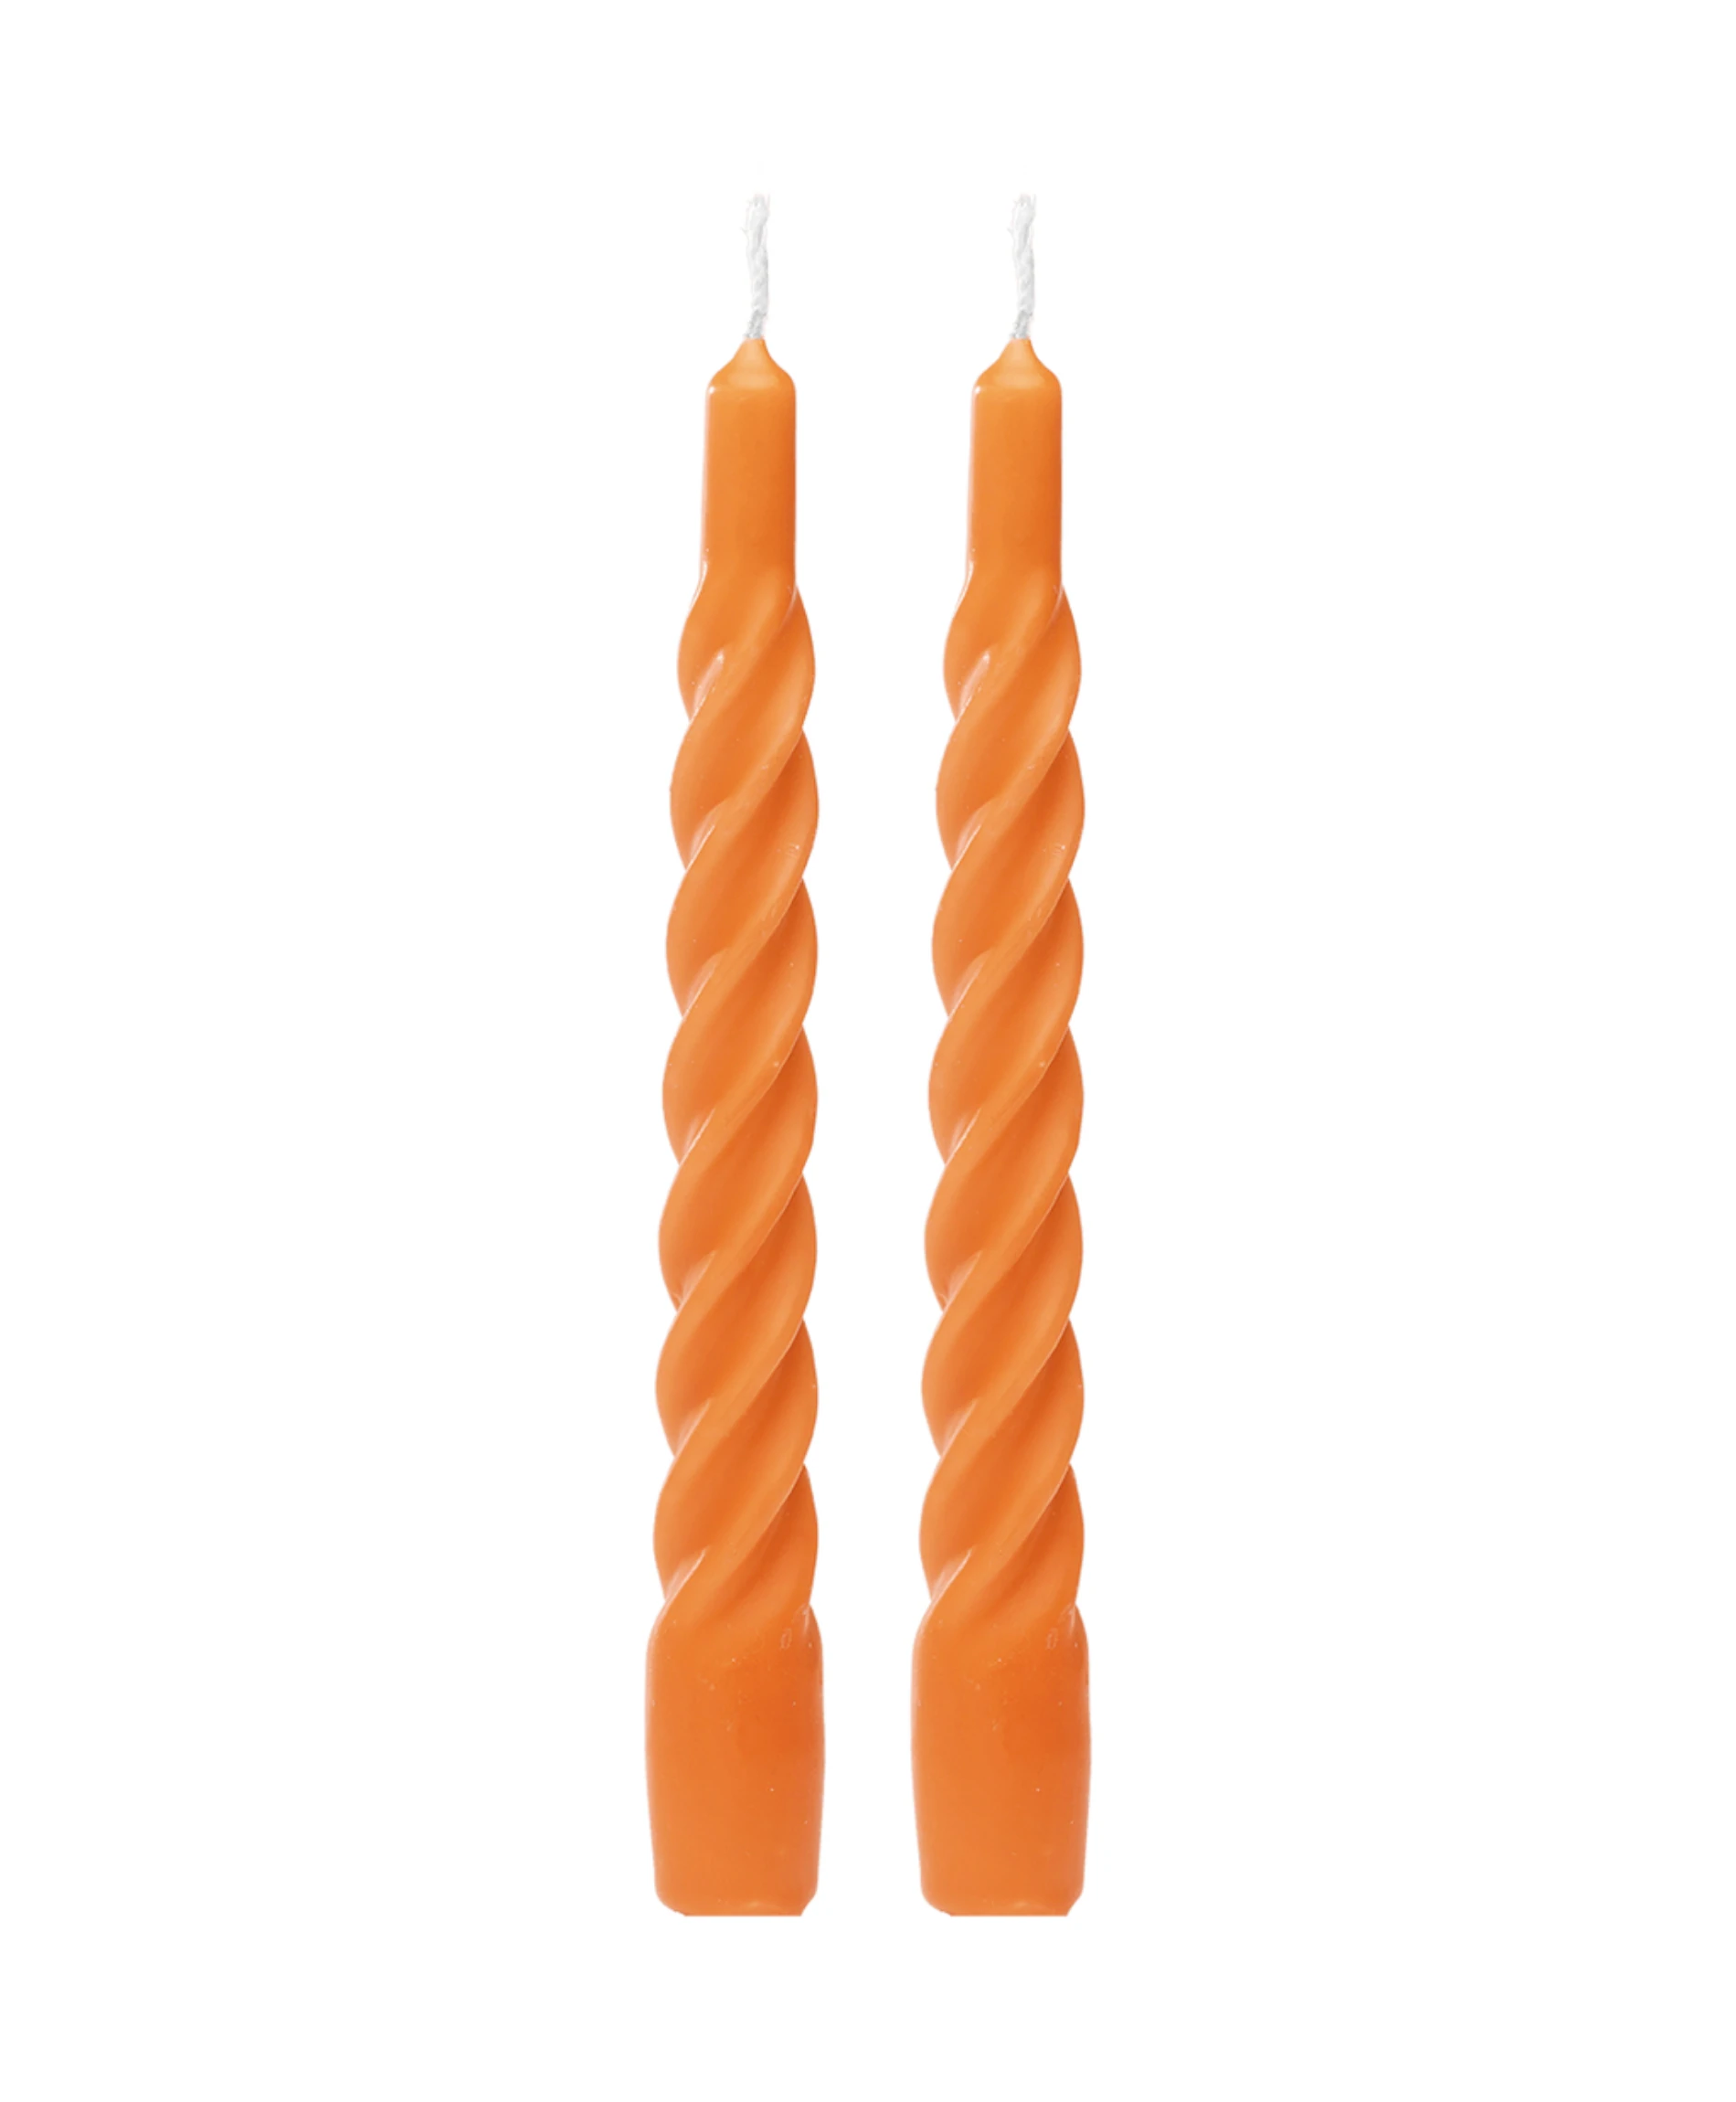 Anna + Nina Shiny Orange Twisted Candles (set Of 2)